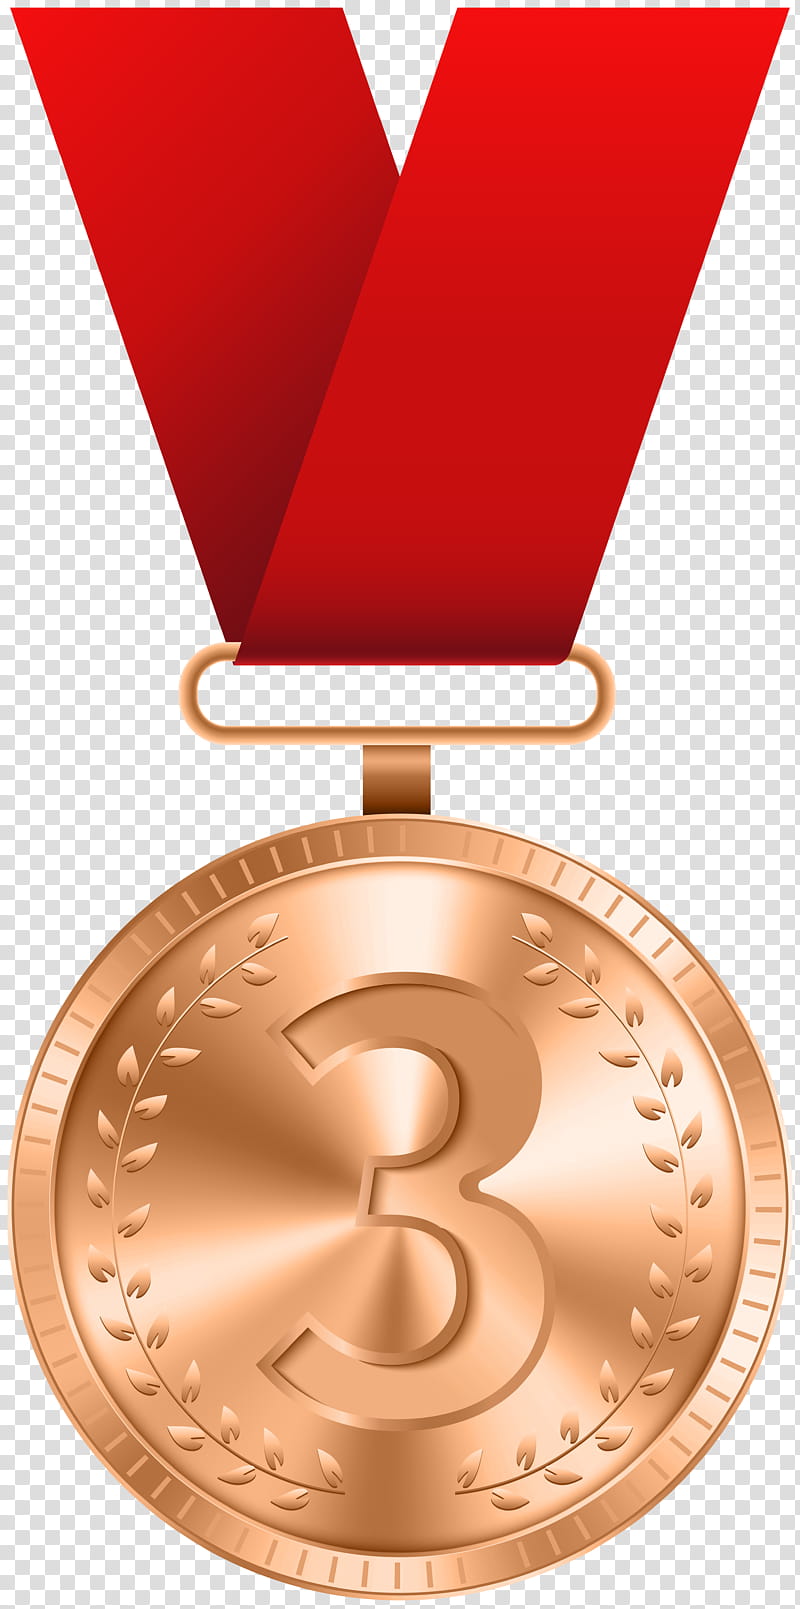 Cartoon Gold Medal, Bronze Medal, Silver Medal, Award, Trophy, Metal, Symbol transparent background PNG clipart